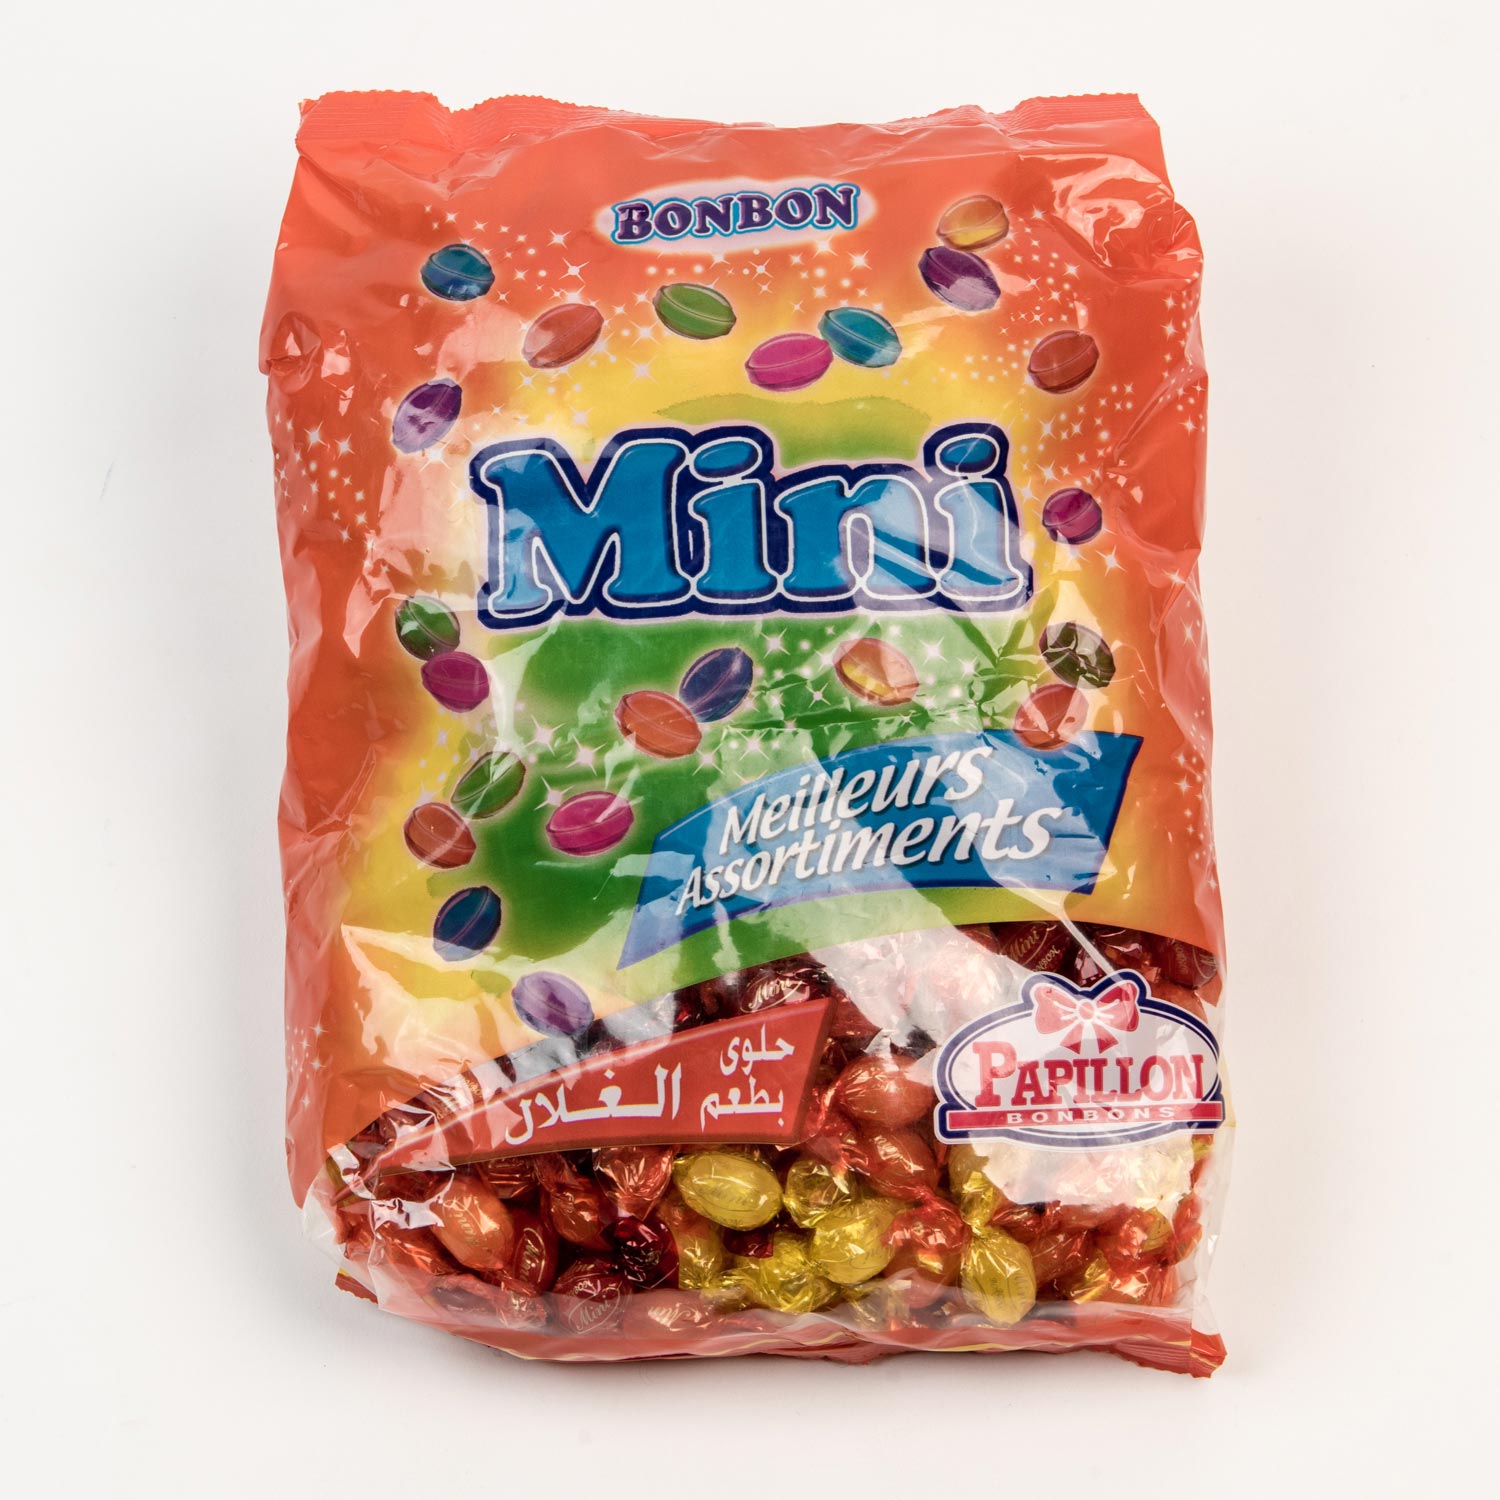 Paquet de mini bonbons aux fruits 2kg